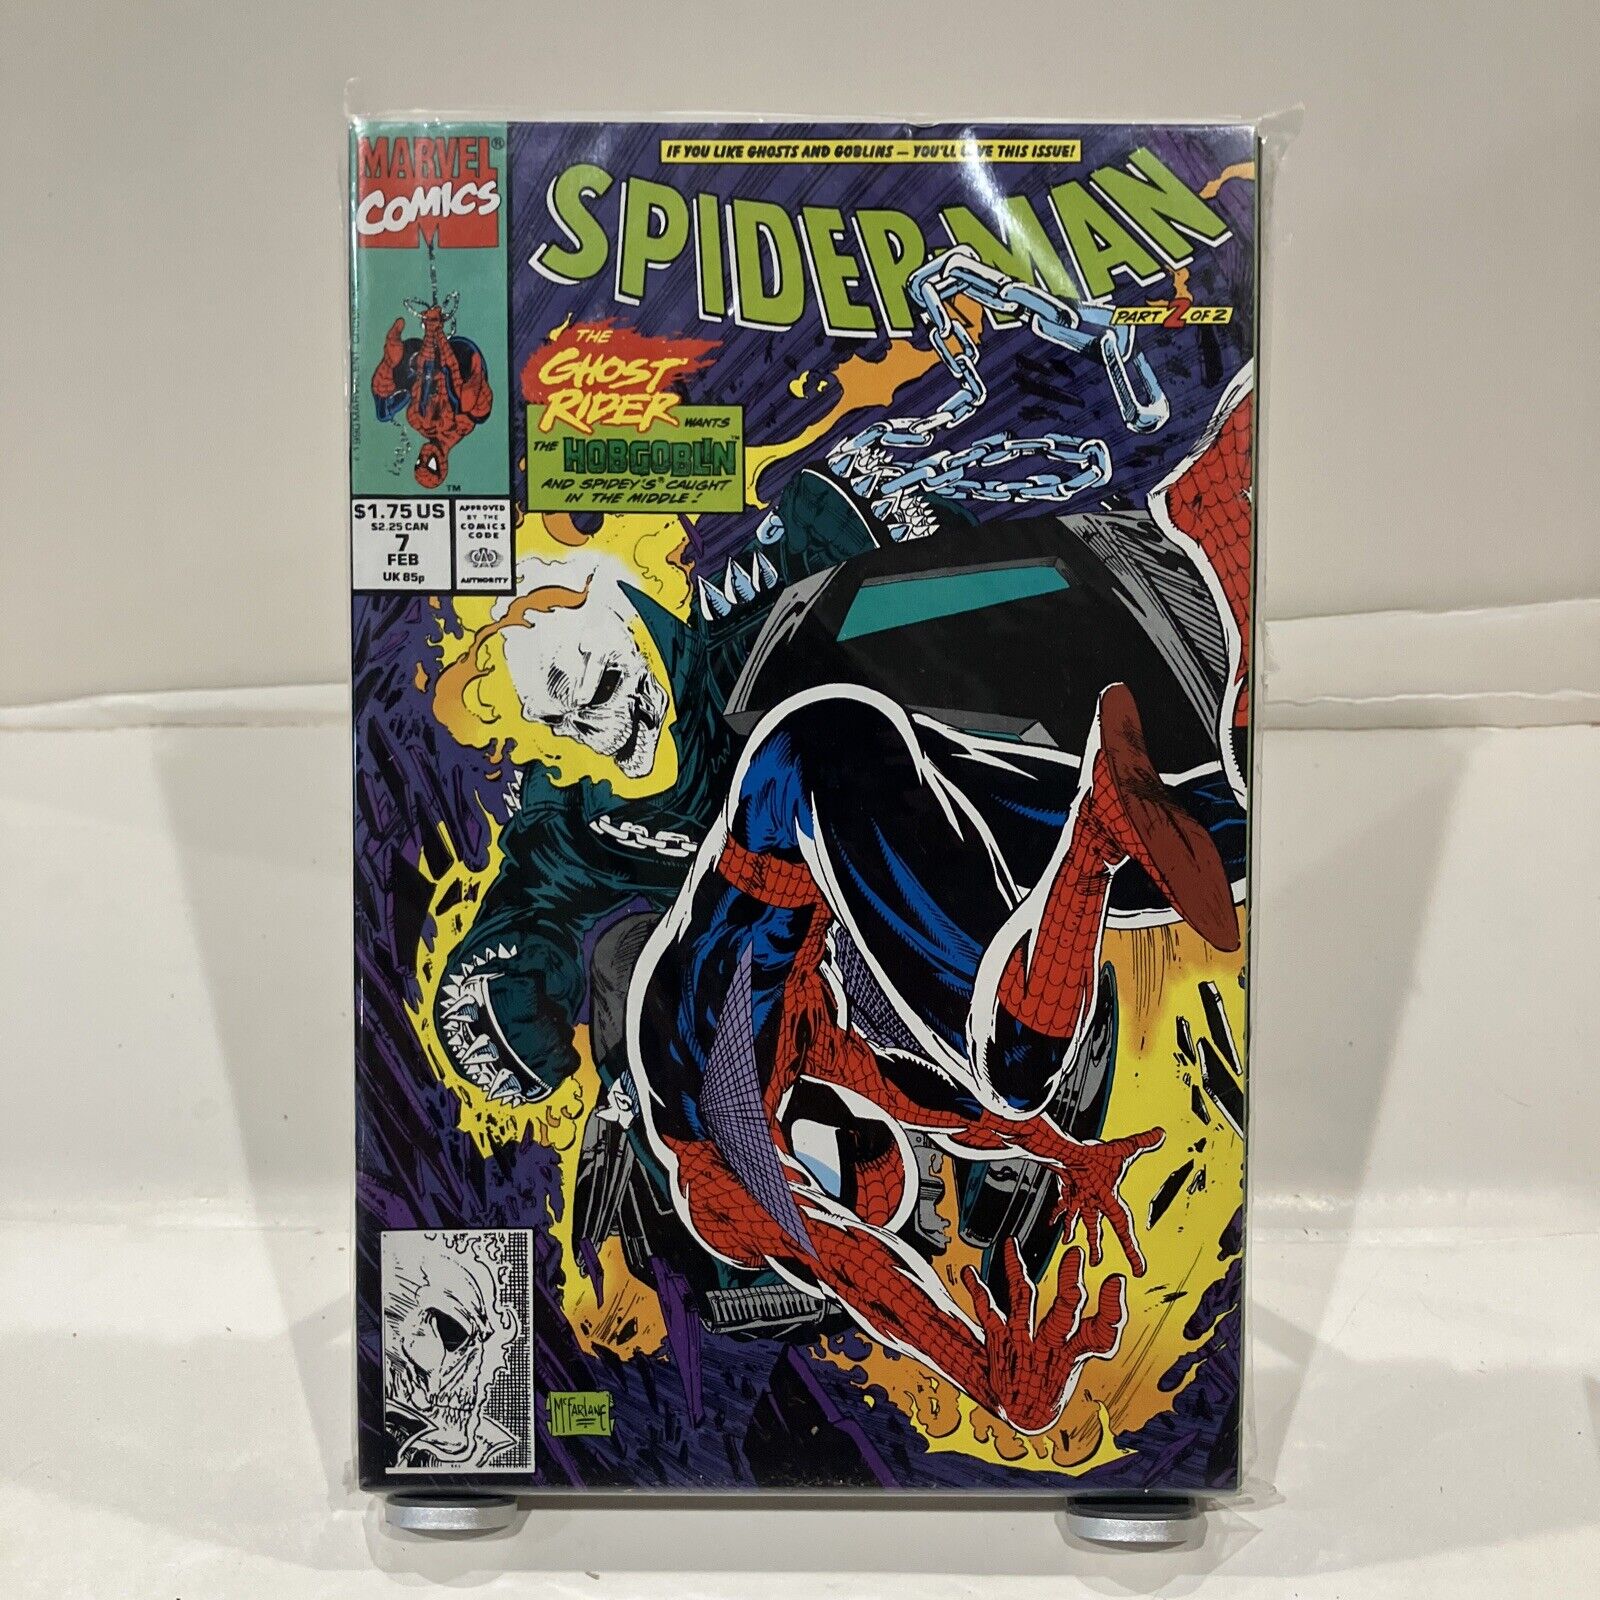 Spider-Man #7 (Marvel, February 1991)